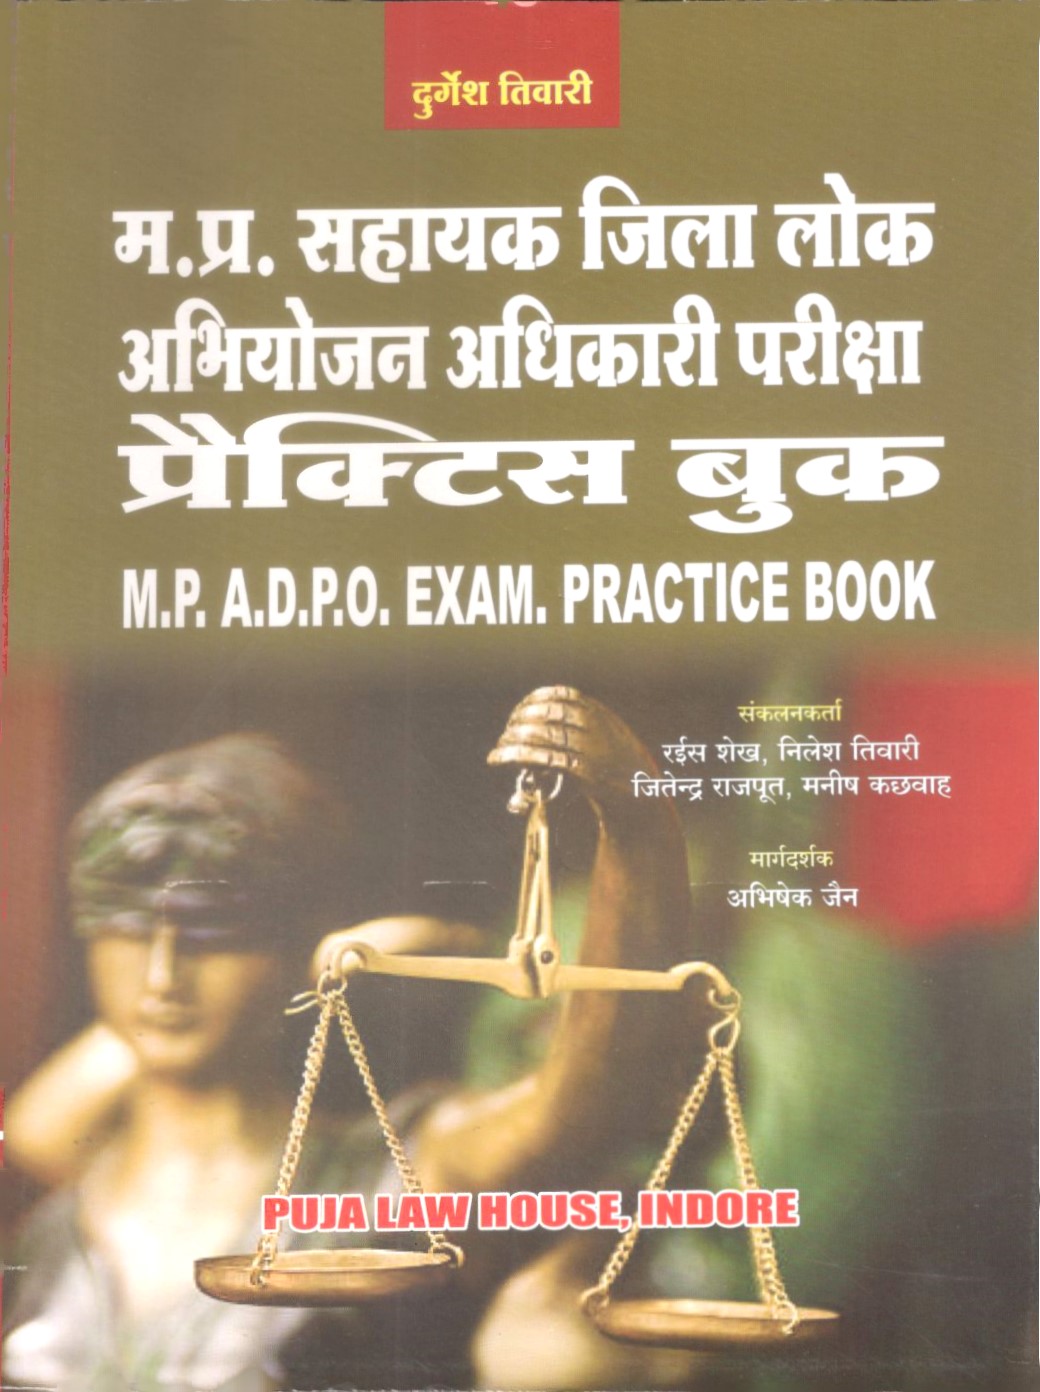 म. प्र. सहायक जिला लोक अभियोजन अधिकारी परीक्षा प्रैक्टिस बुक / M.P.A.D.P.O. Exam Practice Book